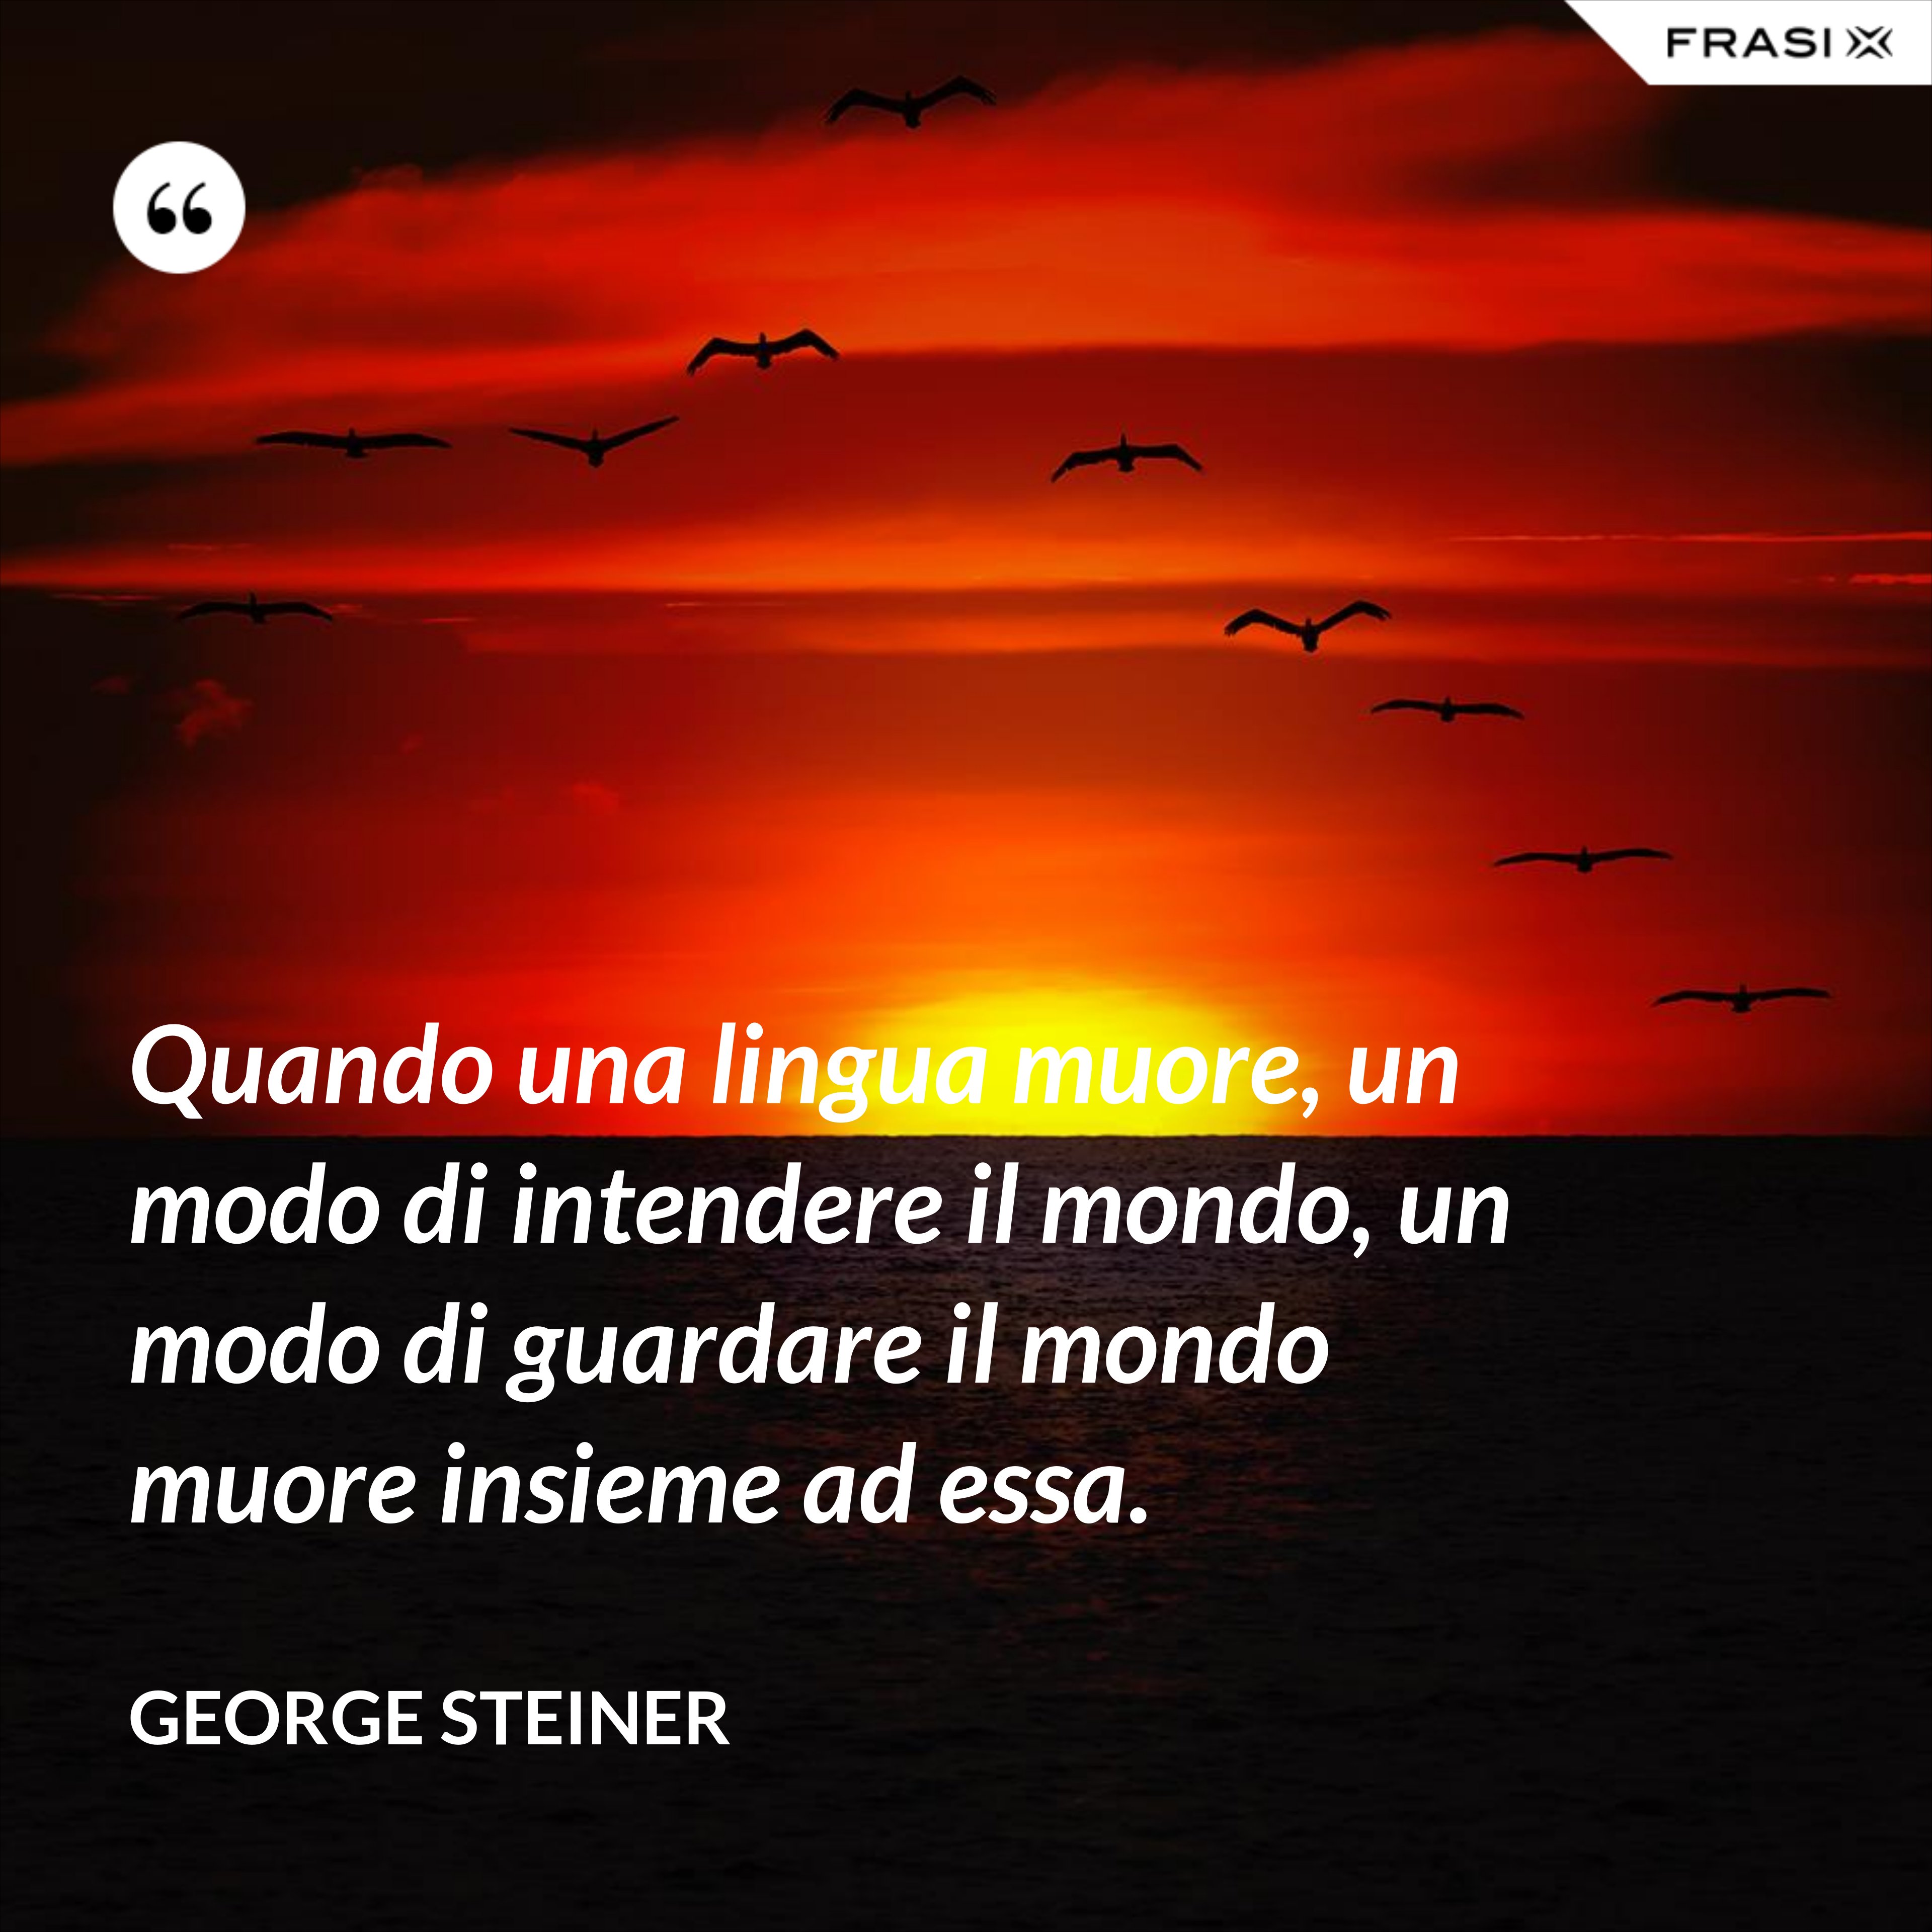 Quando una lingua muore, un modo di intendere il mondo, un modo di guardare il mondo muore insieme ad essa. - George Steiner